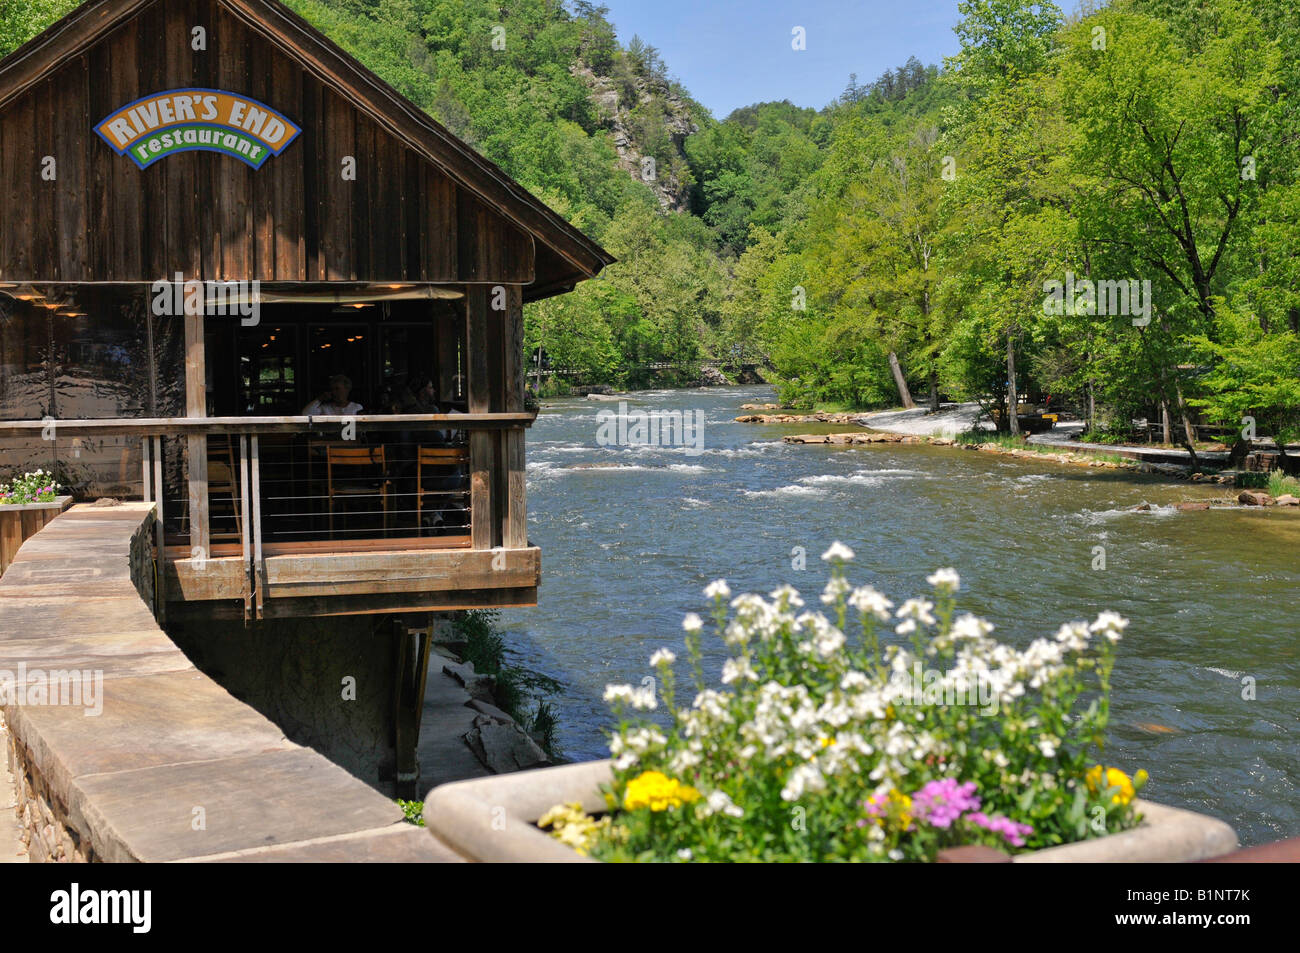 River's End restaurante en el Nantahala River, Great Smoky Mountains, en Carolina del Norte, Estados Unidos Foto de stock